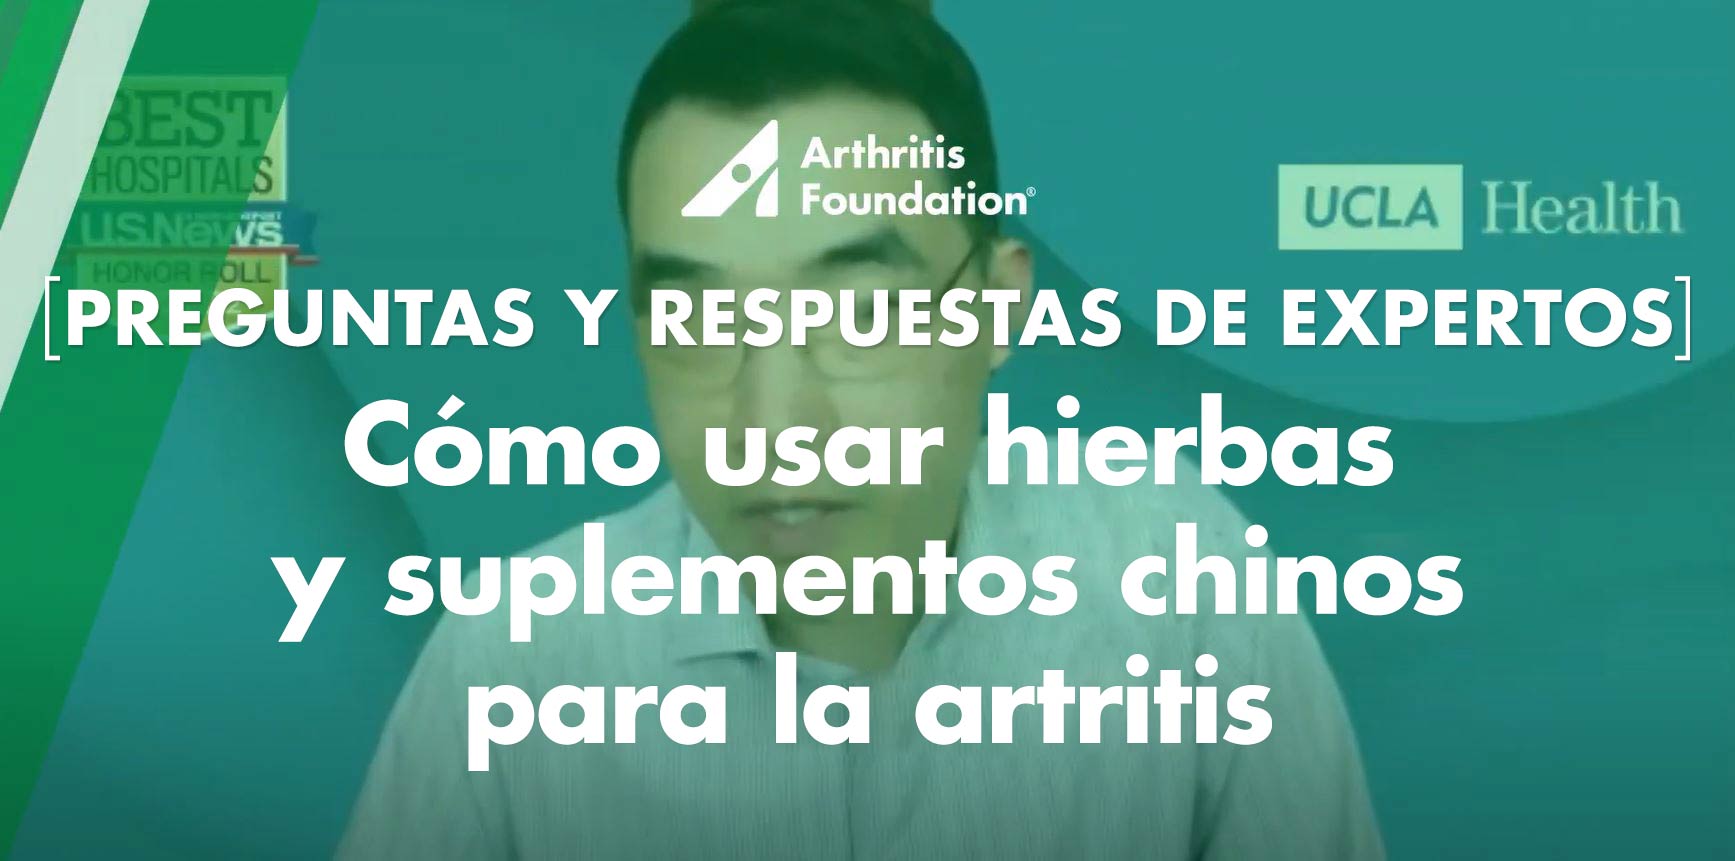 Preguntas y respuestas de expertos: Cómo usar hierbas y suplementos chinos para la artritis